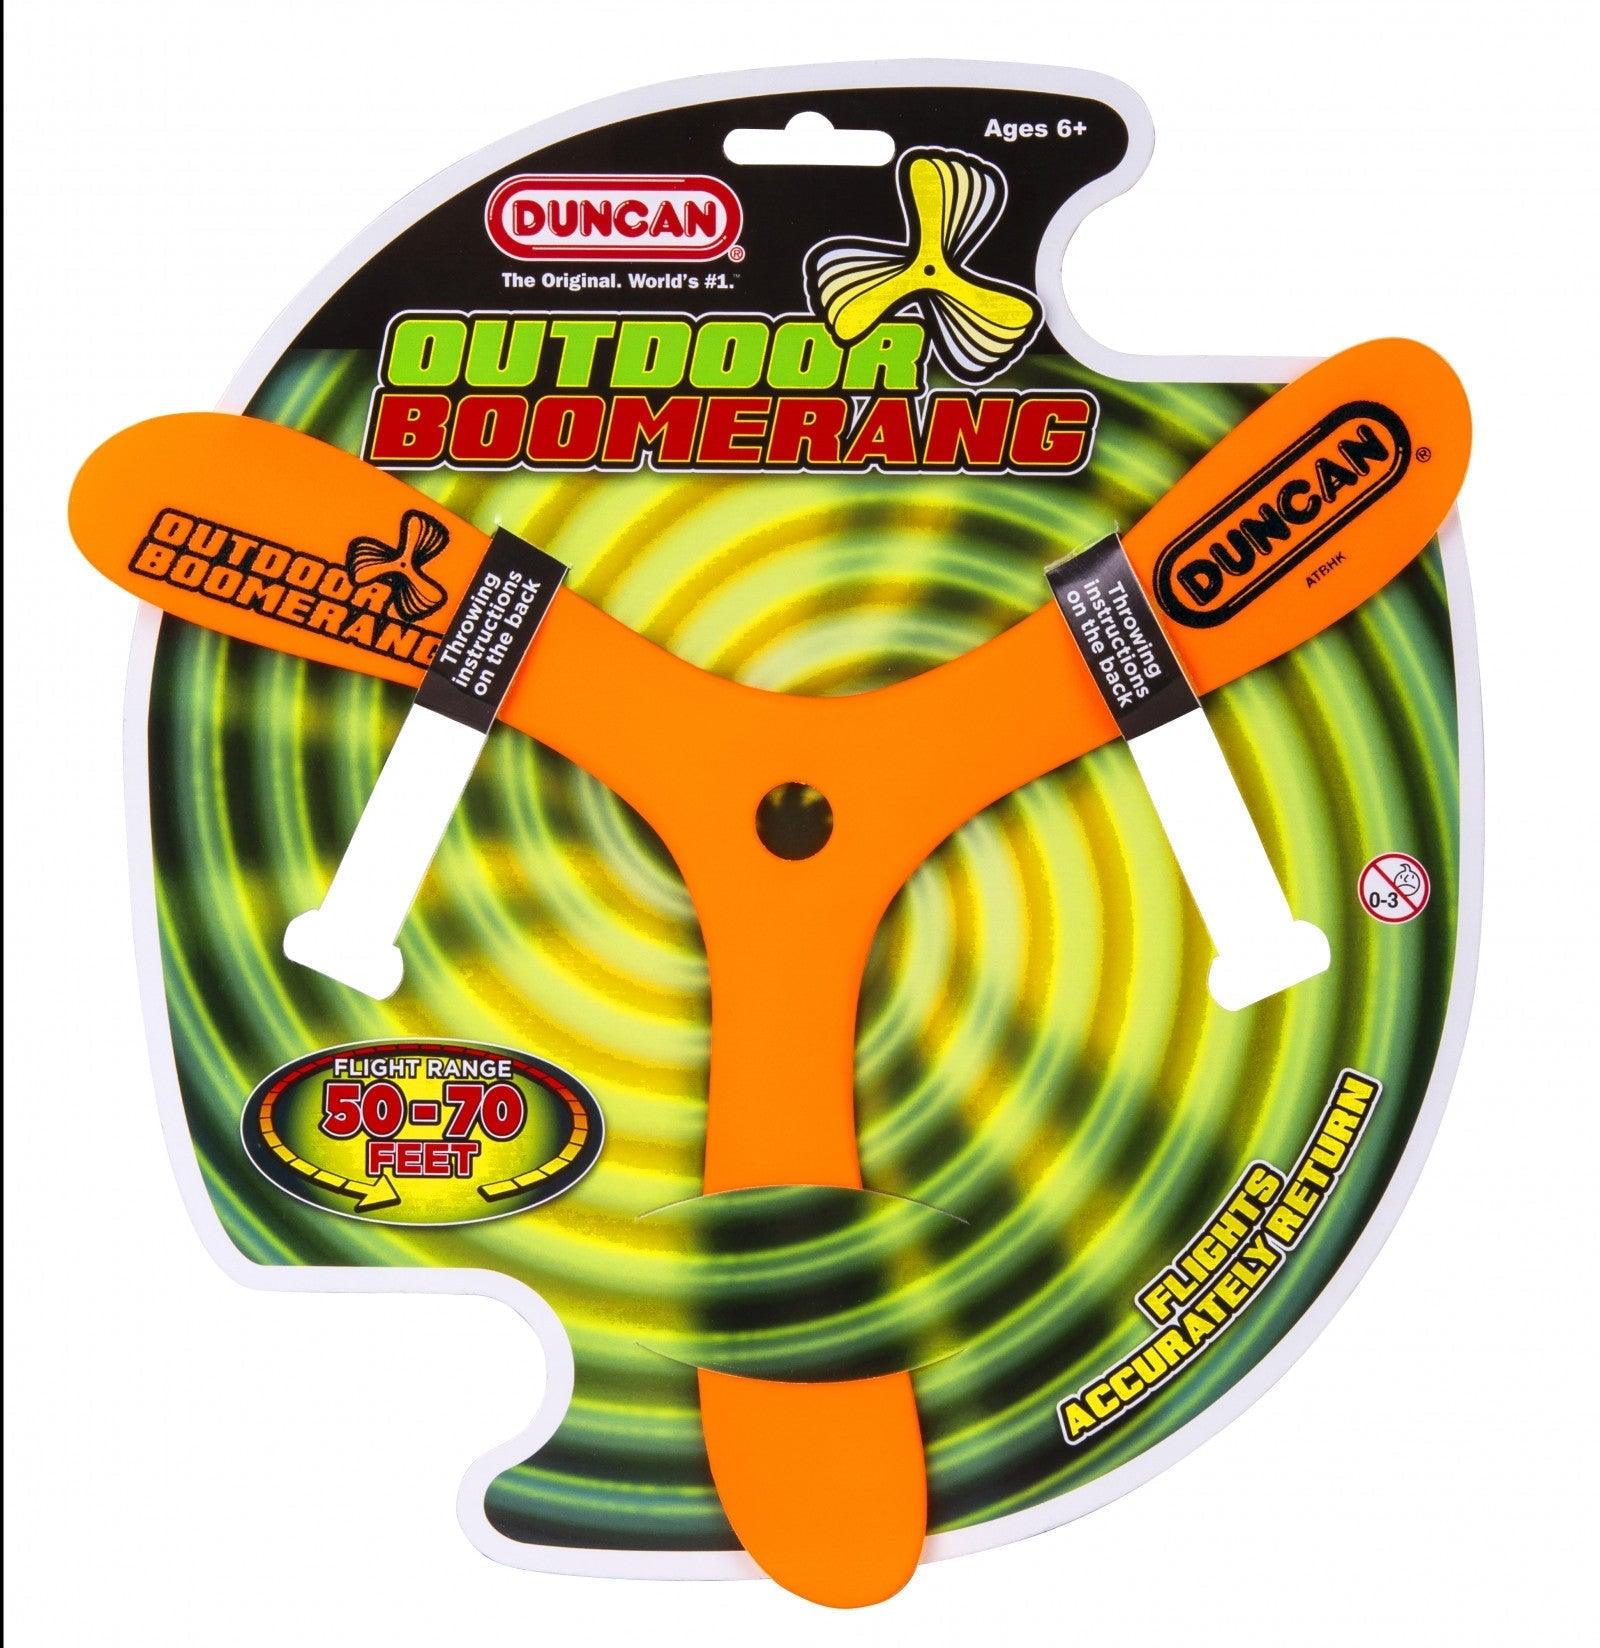 VR-50869 Duncan Outdoor Boomerang (Assorted Colours) - Duncan - Titan Pop Culture